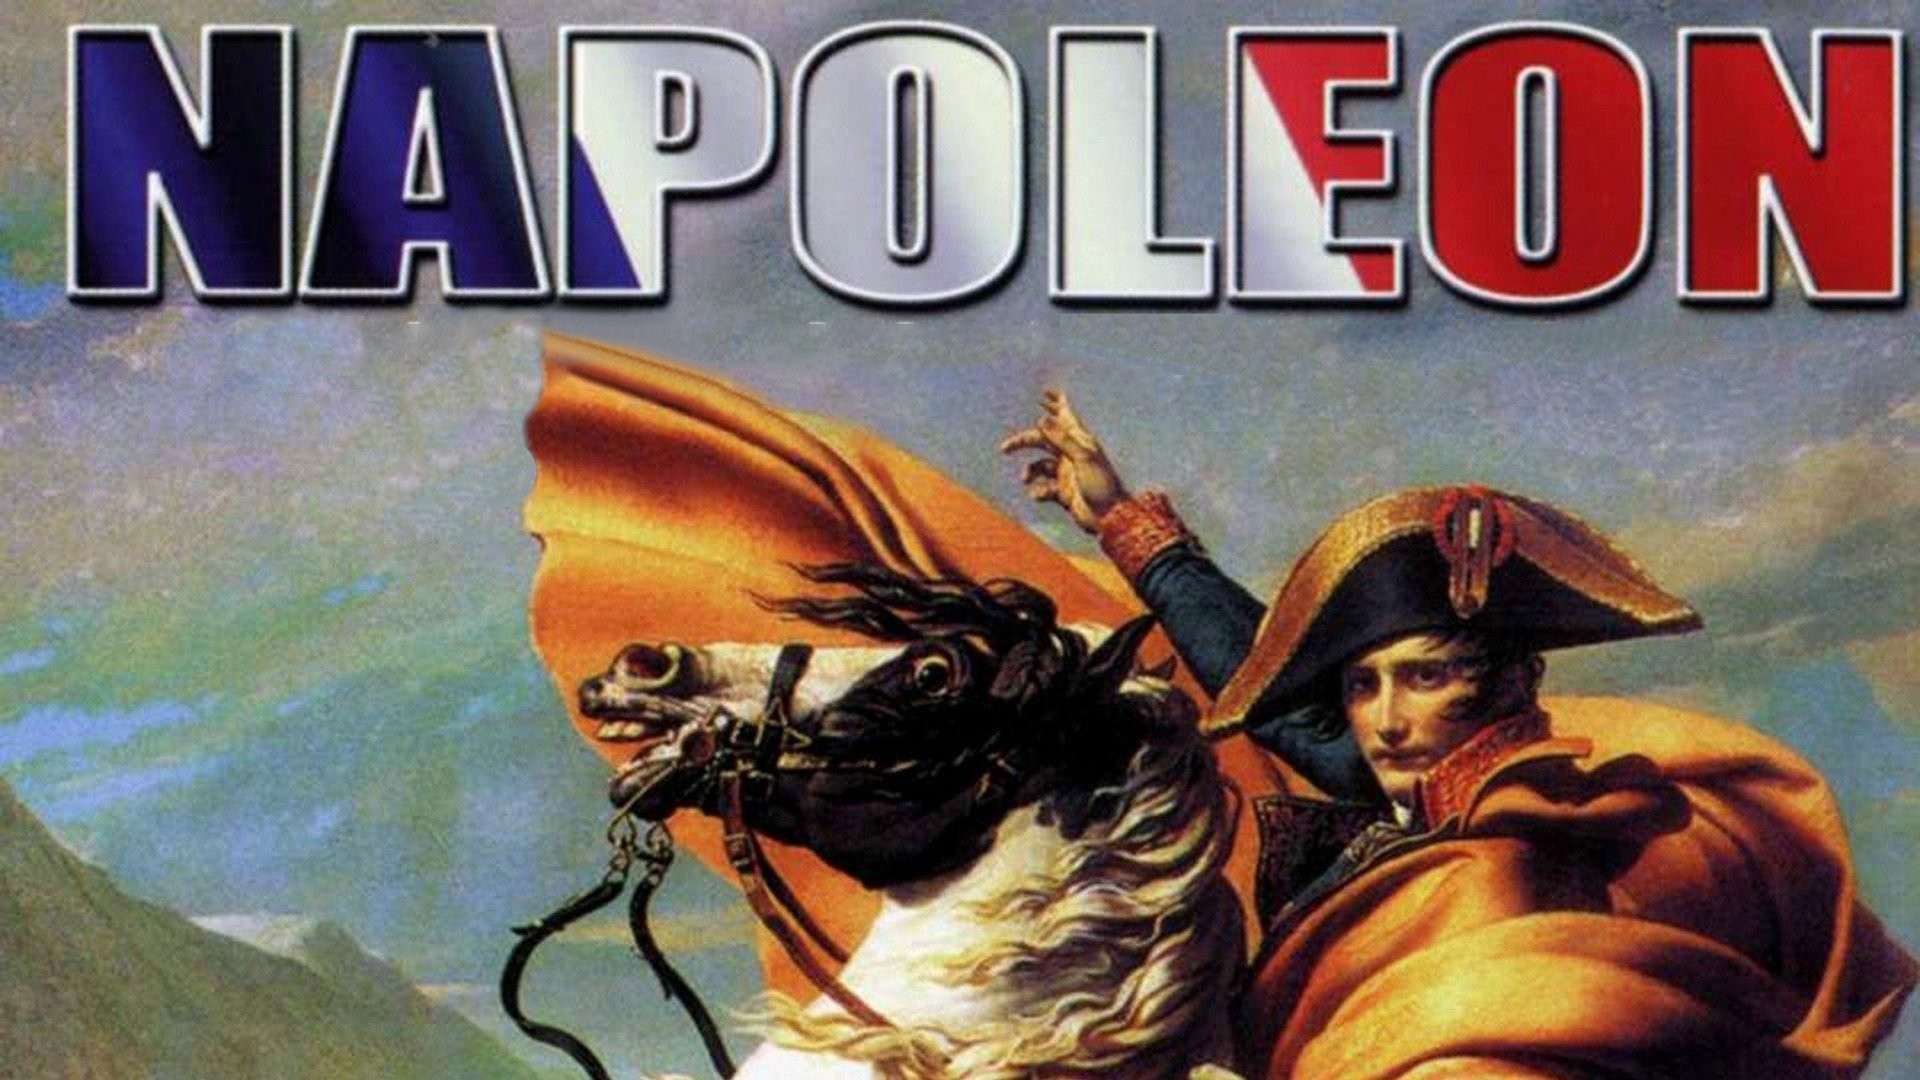 Napoleon - Rotten Tomatoes